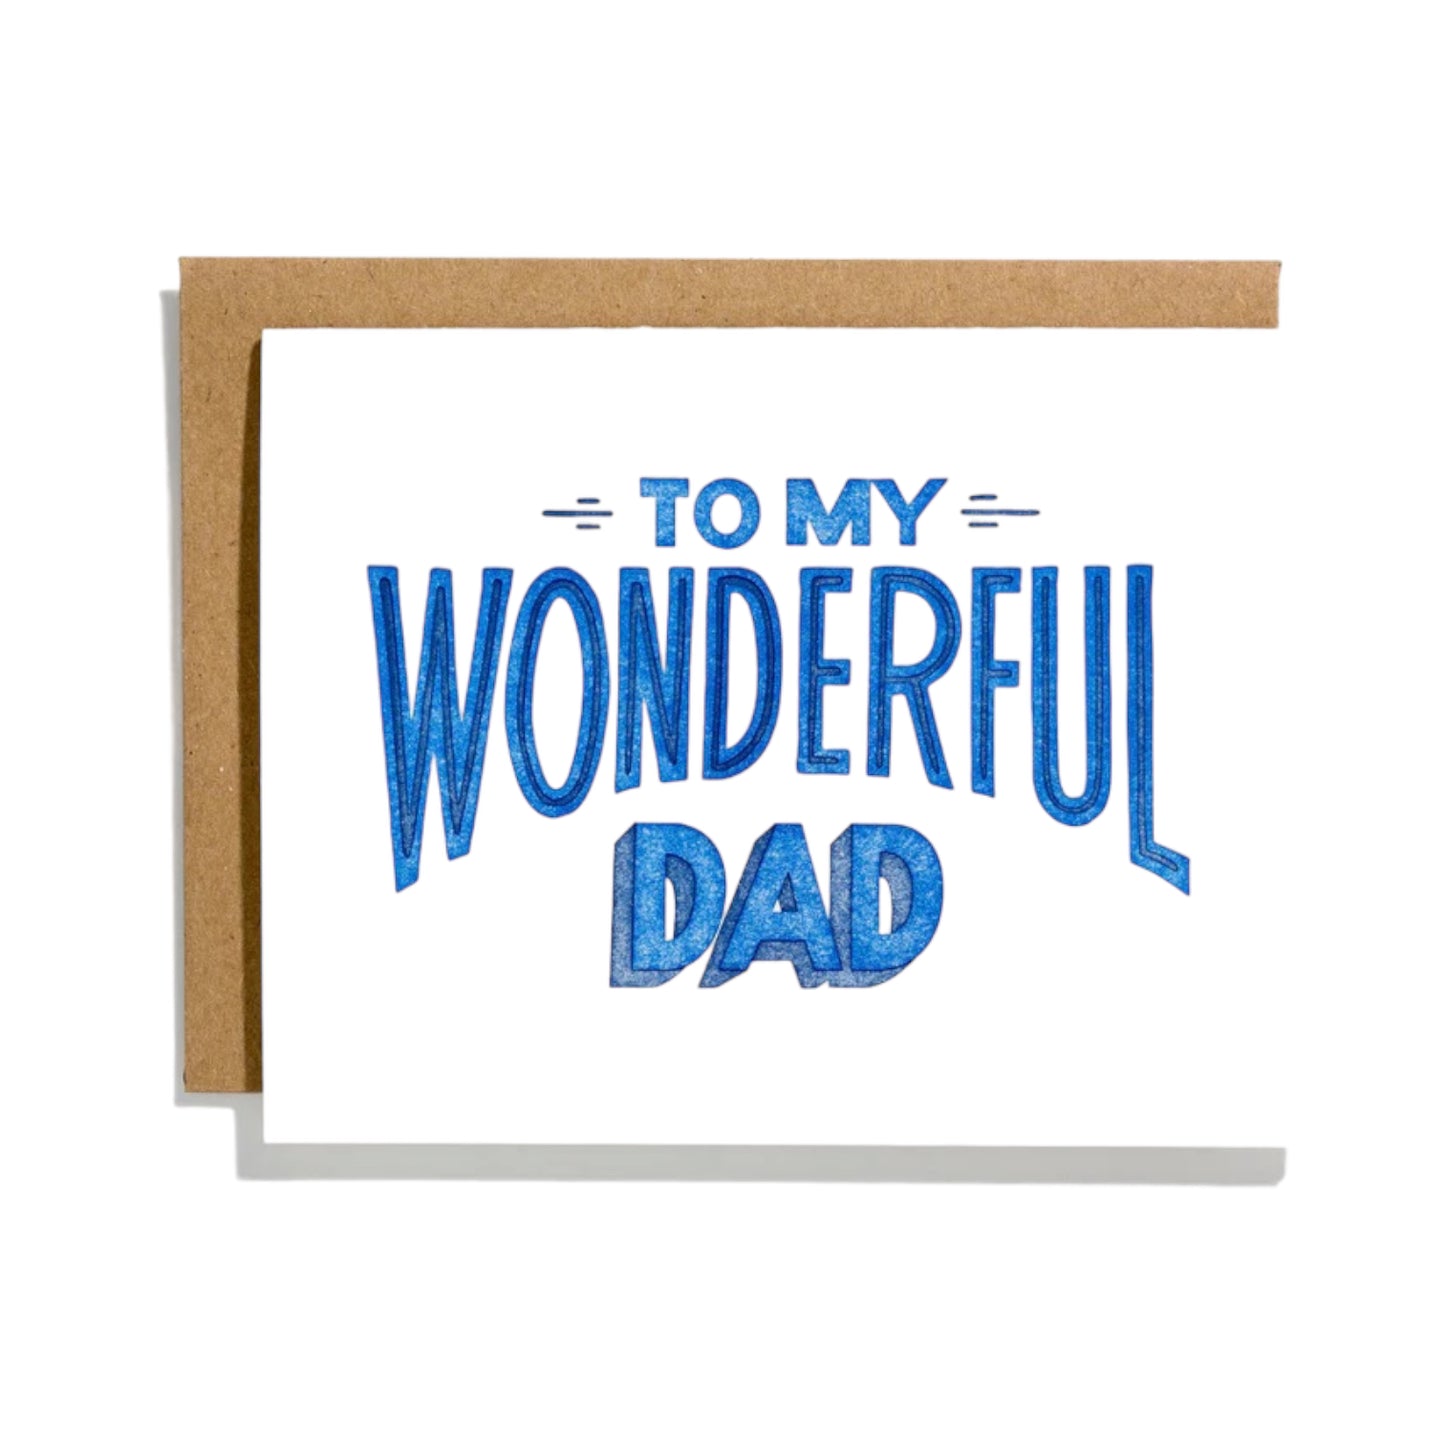 My Wonderful Dad Card by Shorthand Press